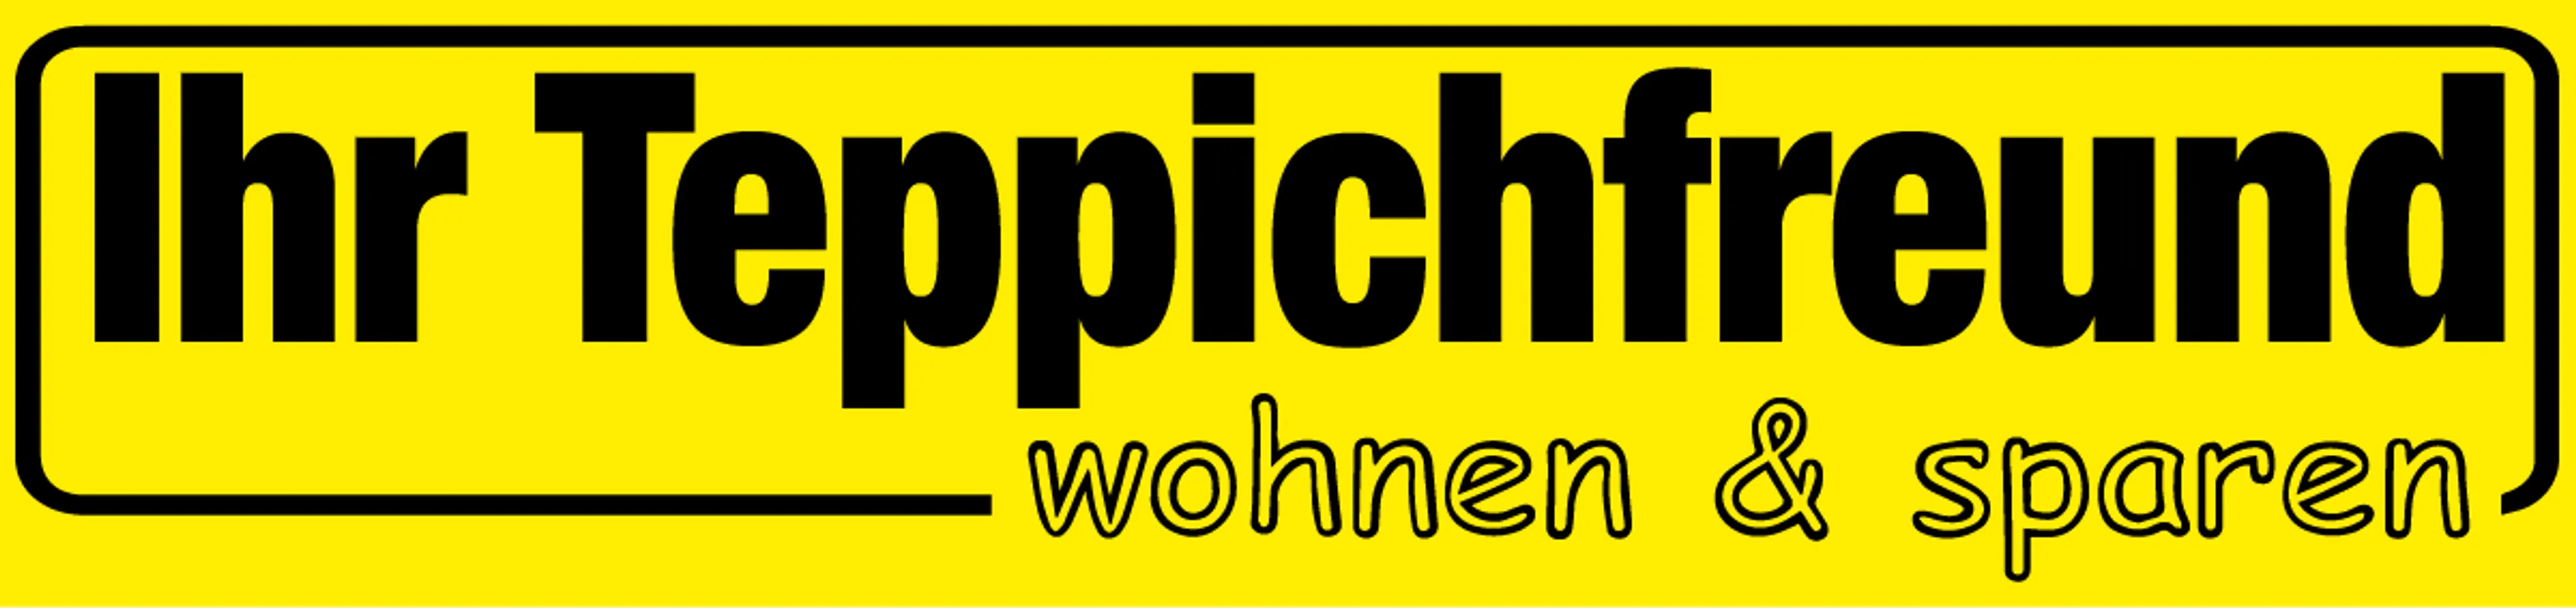 IHR TEPPICHFREUND logo